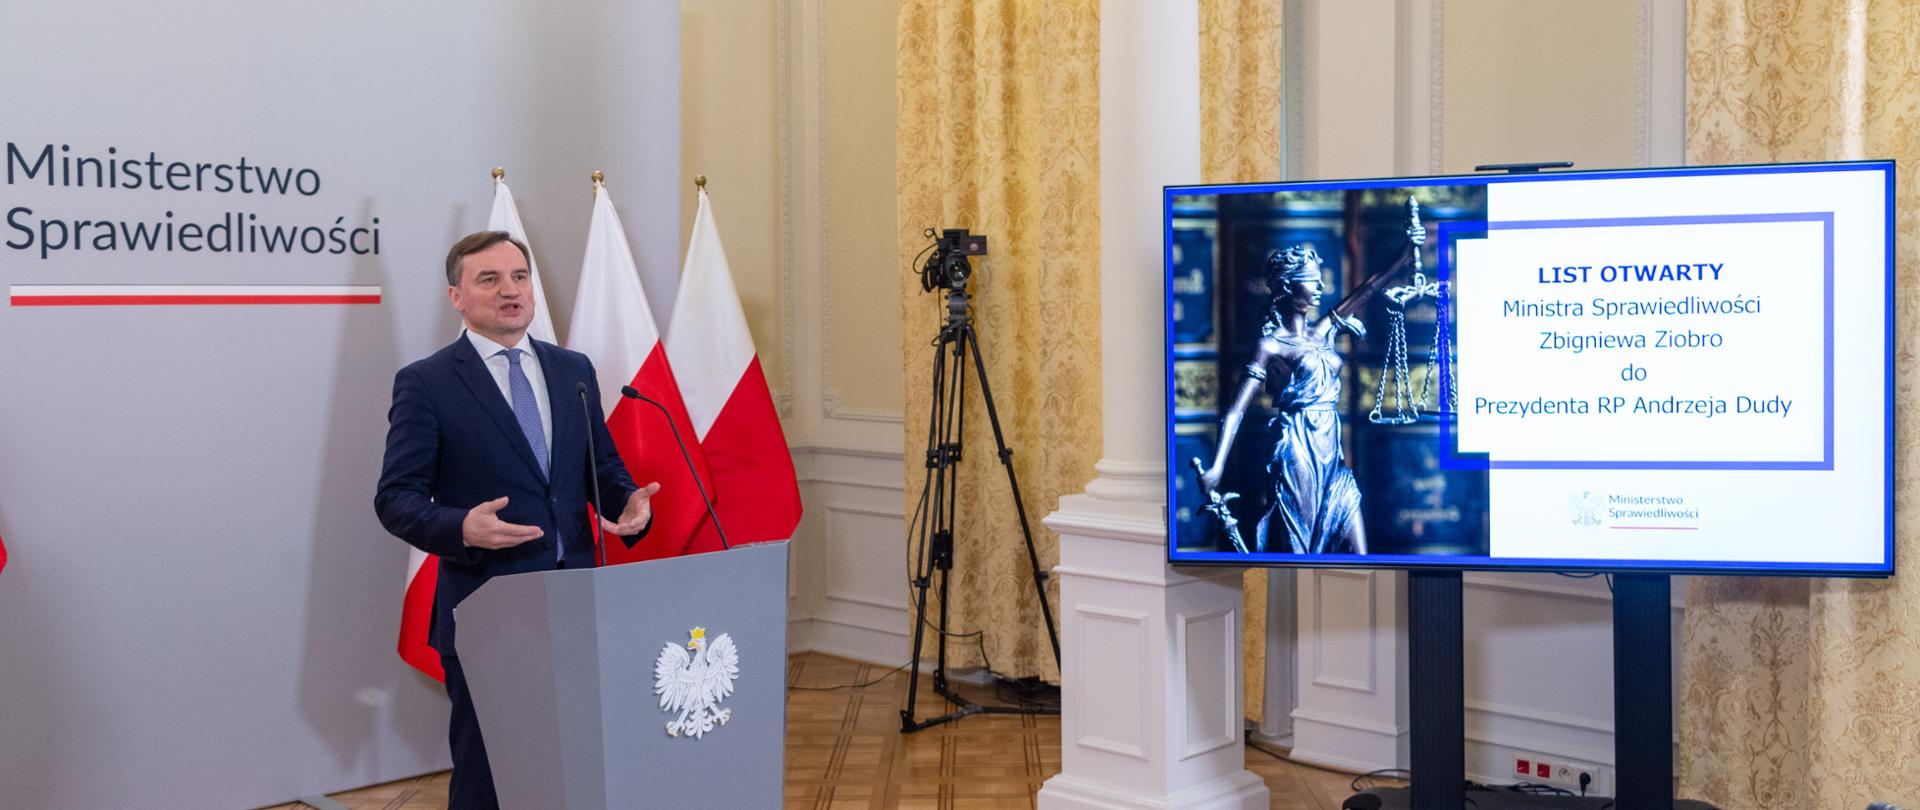 Oświadczenie Ministra Sprawiedliwości Prokuratora Generalnego Zbigniewa Ziobro